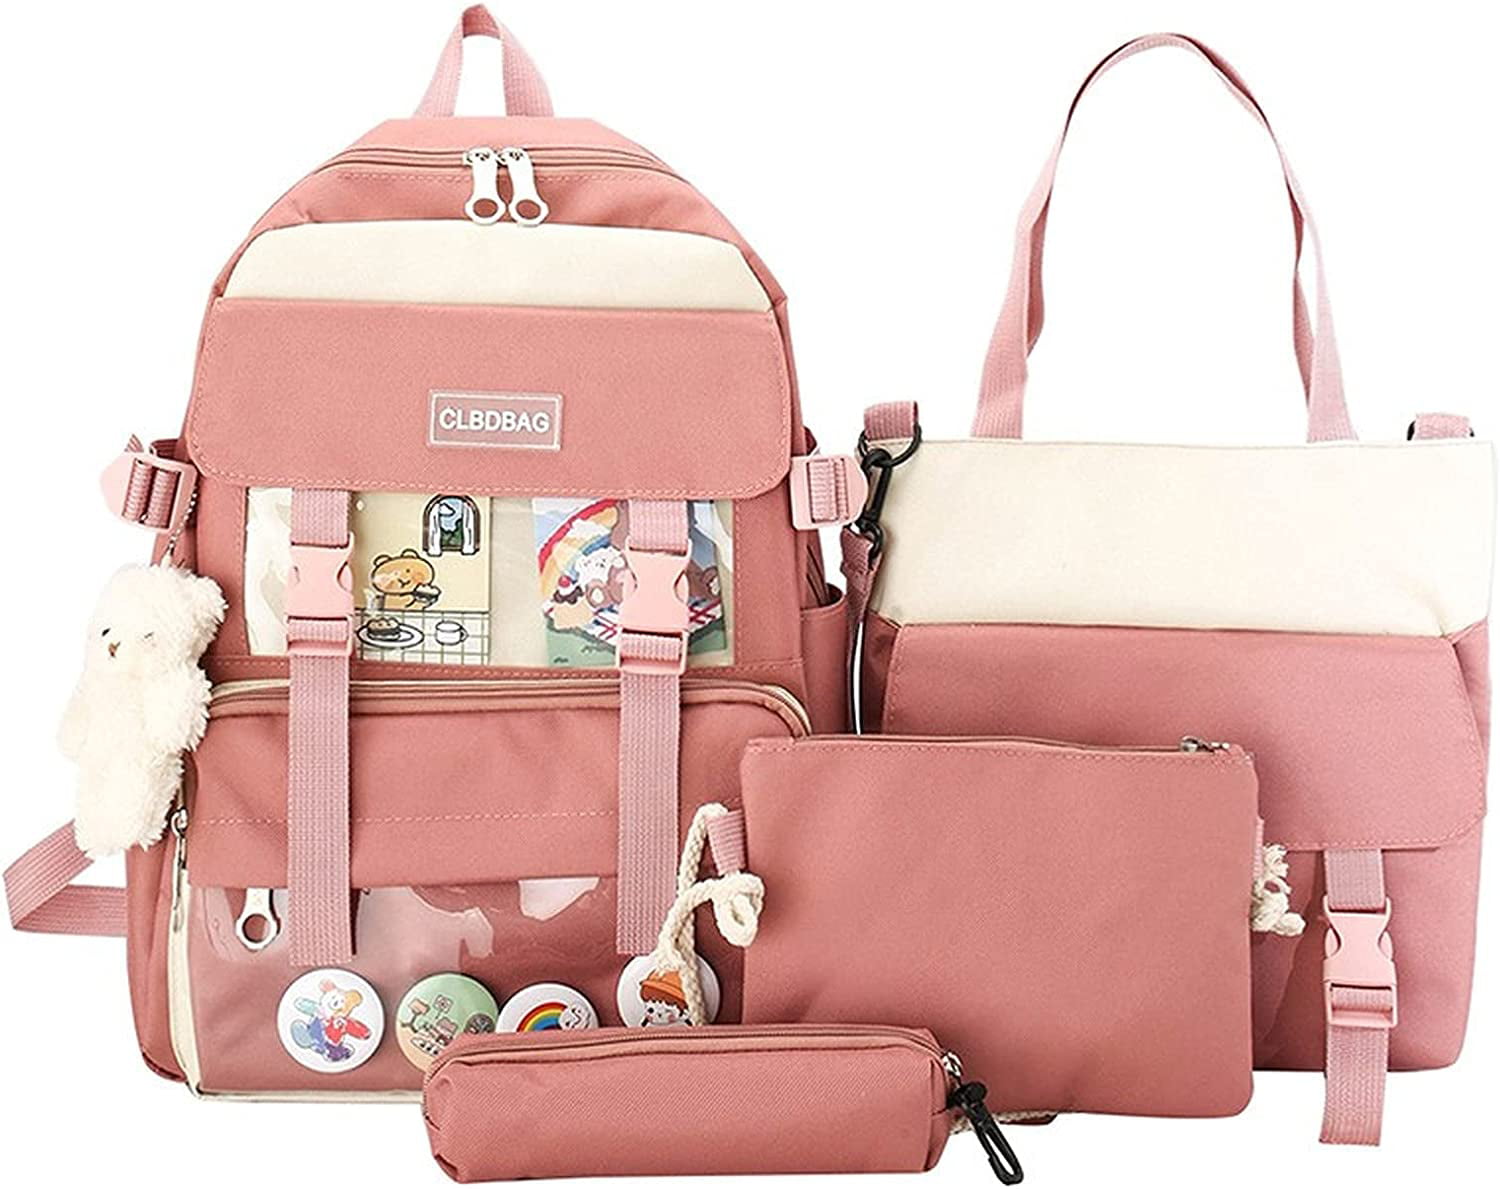 images handbag essentials pinterest | Small purse essentials, Purse  essentials, Handbag essentials